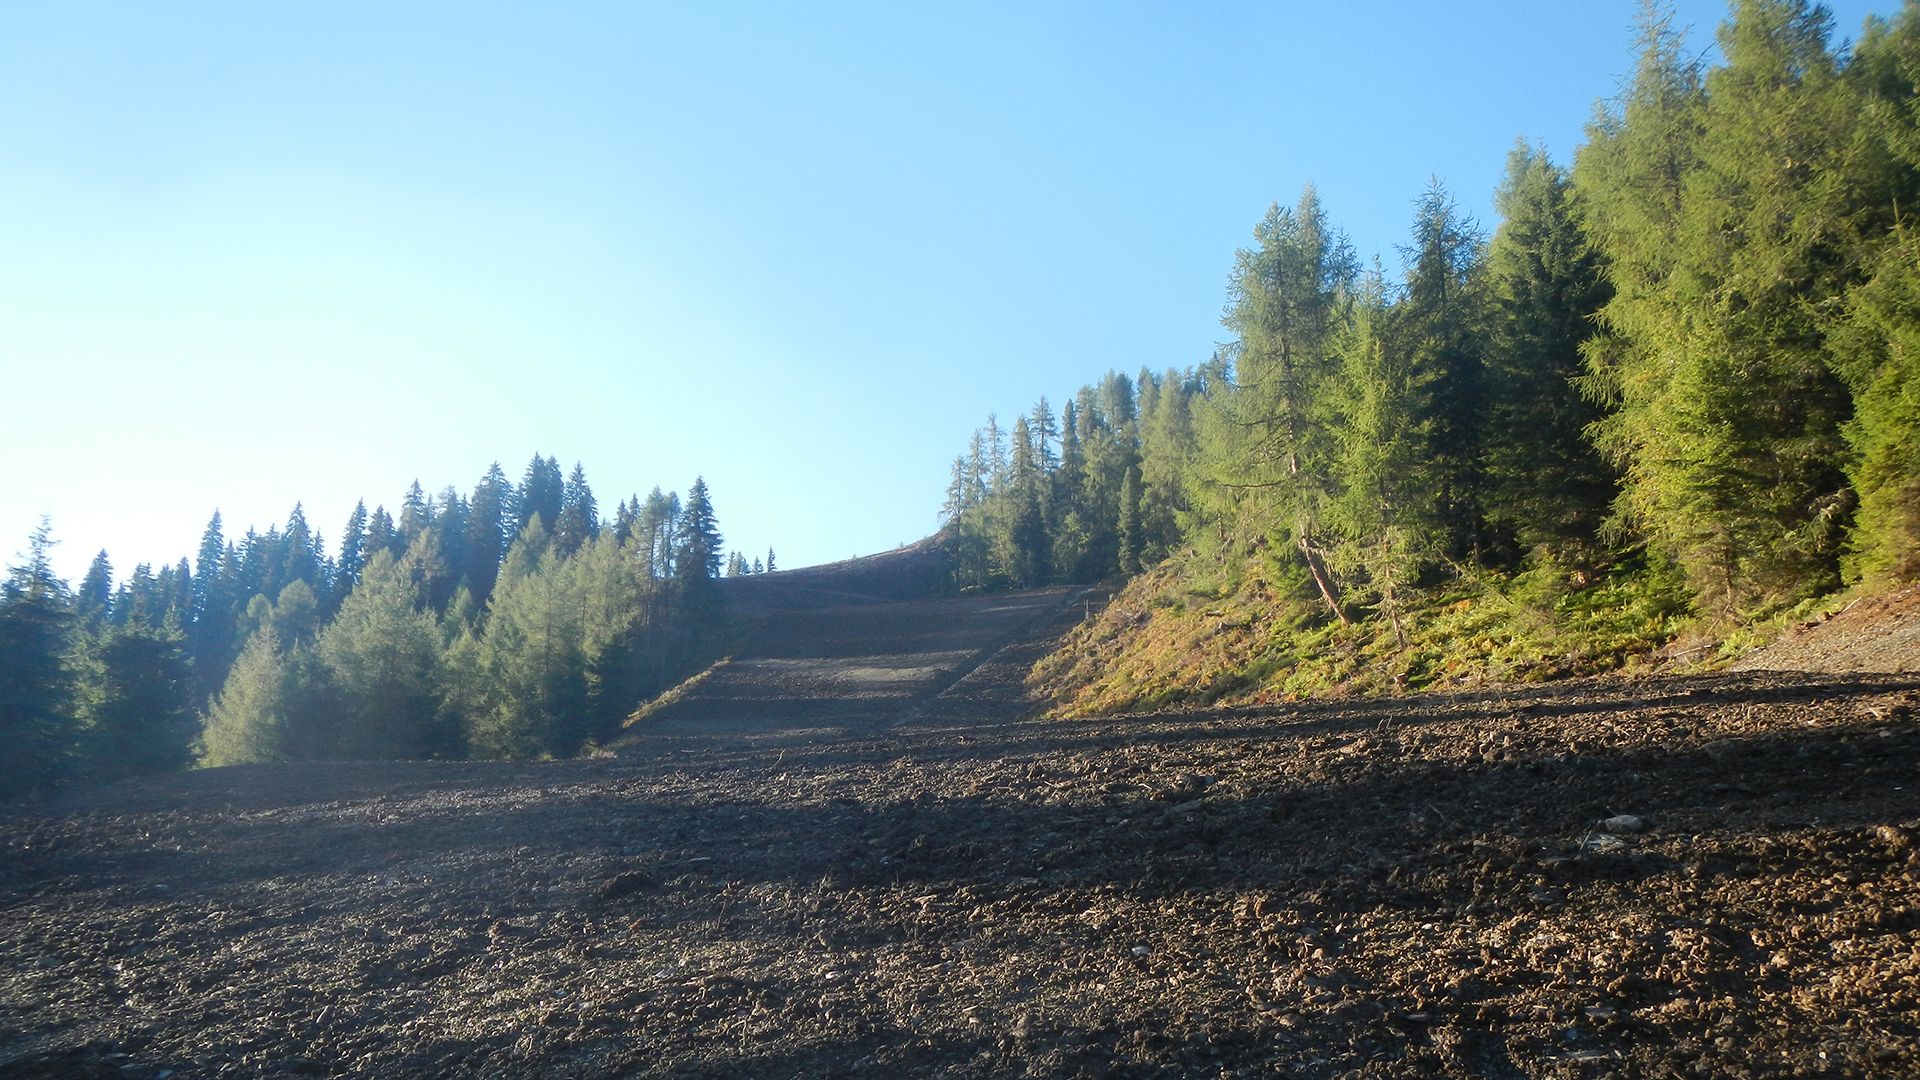 Flinke ingrepen in het landschap waren nodig voor de aanleg van de piste (mayrhofner-bergbahnen.com)